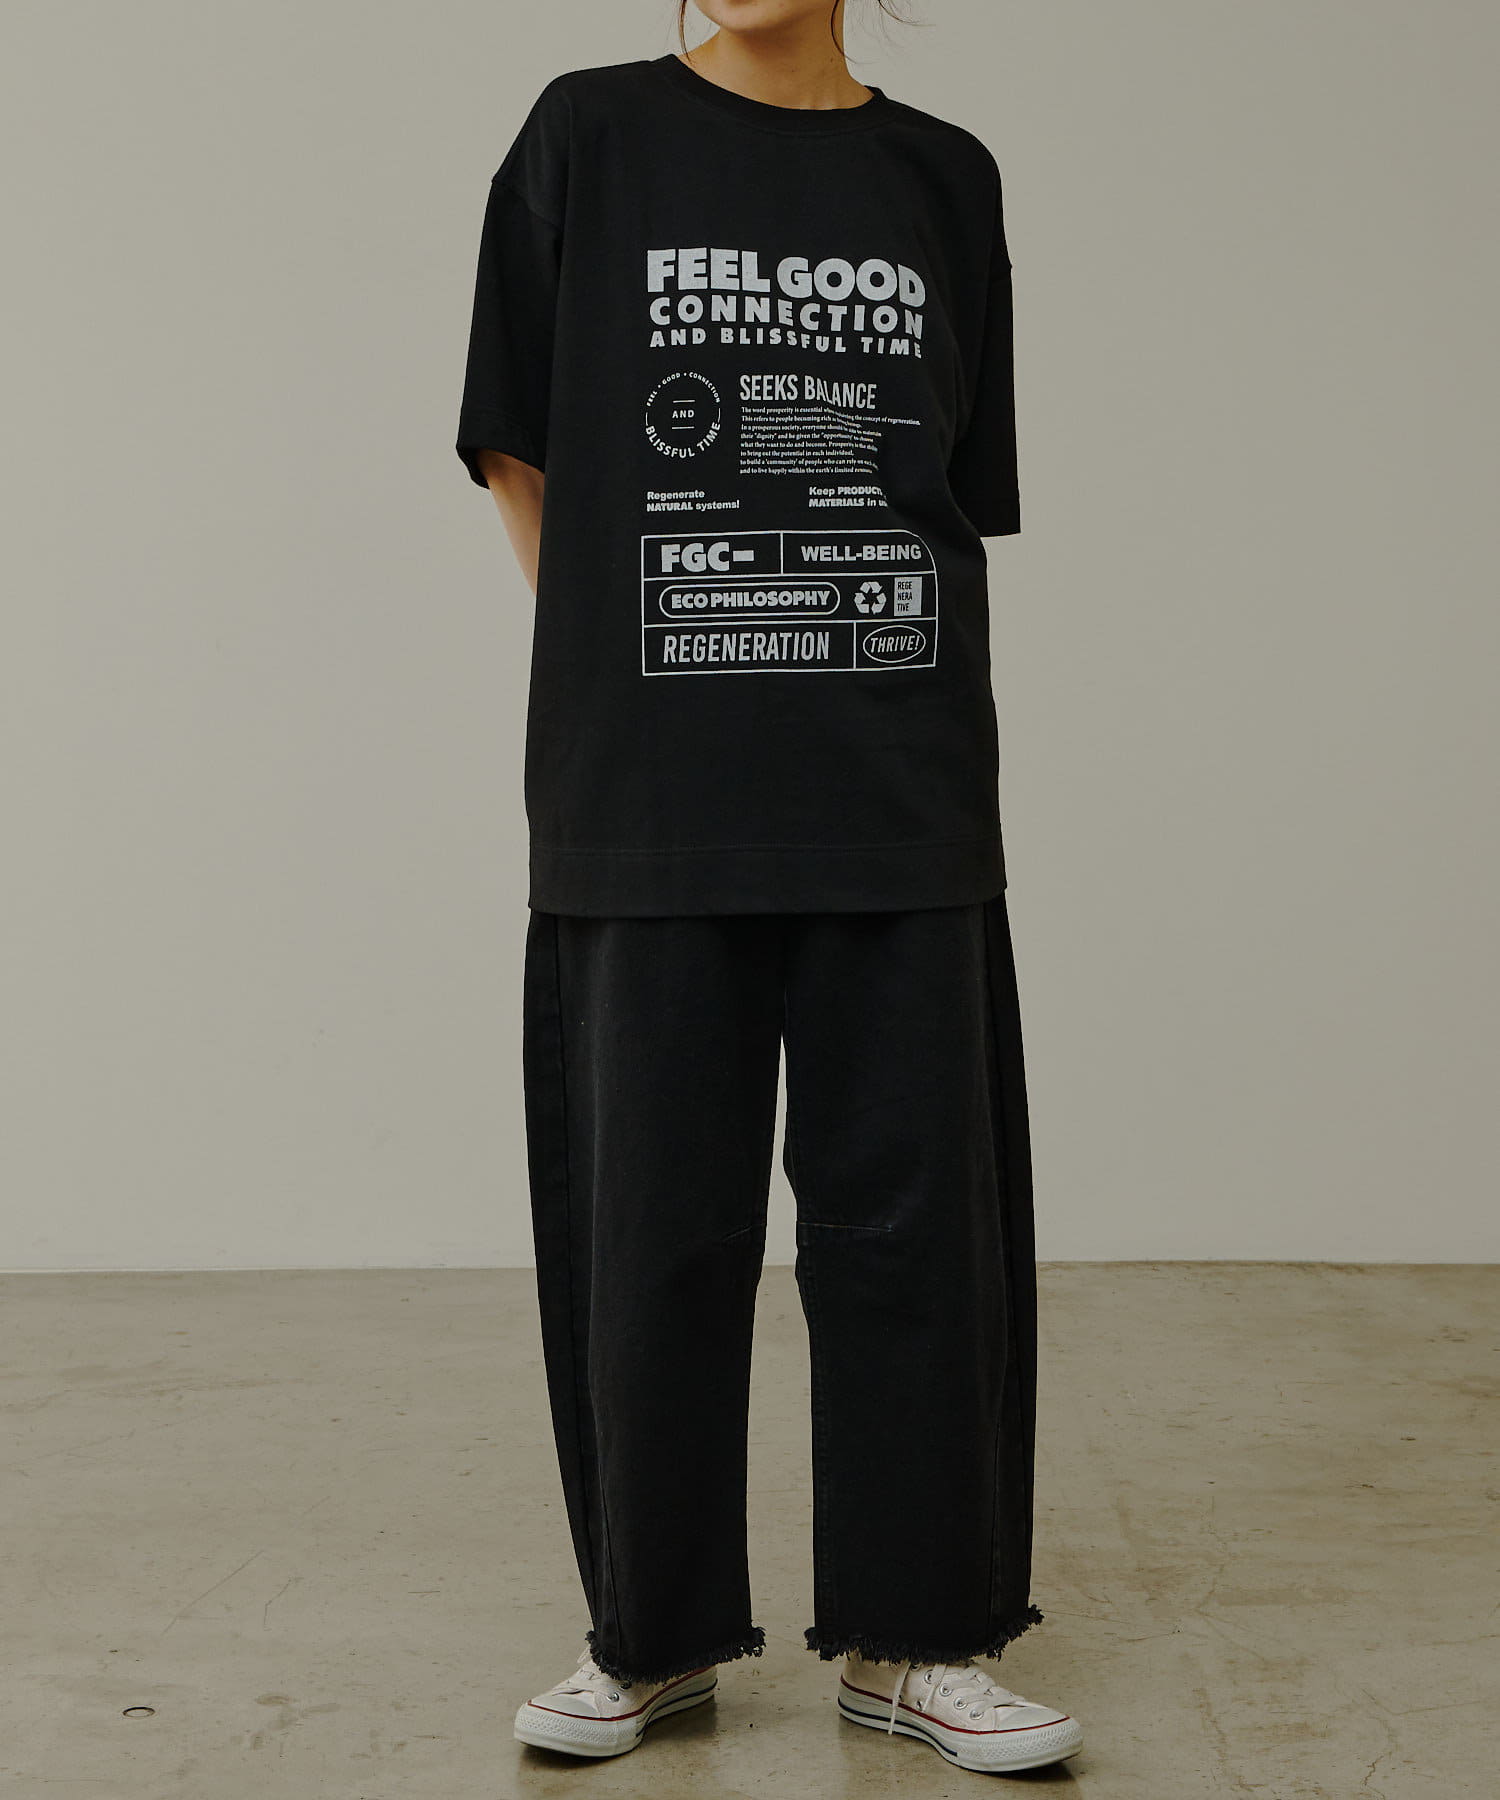 PUAL CE CIN(ピュアルセシン) 【F&B】リサイクルコットン2WAY Tシャツ